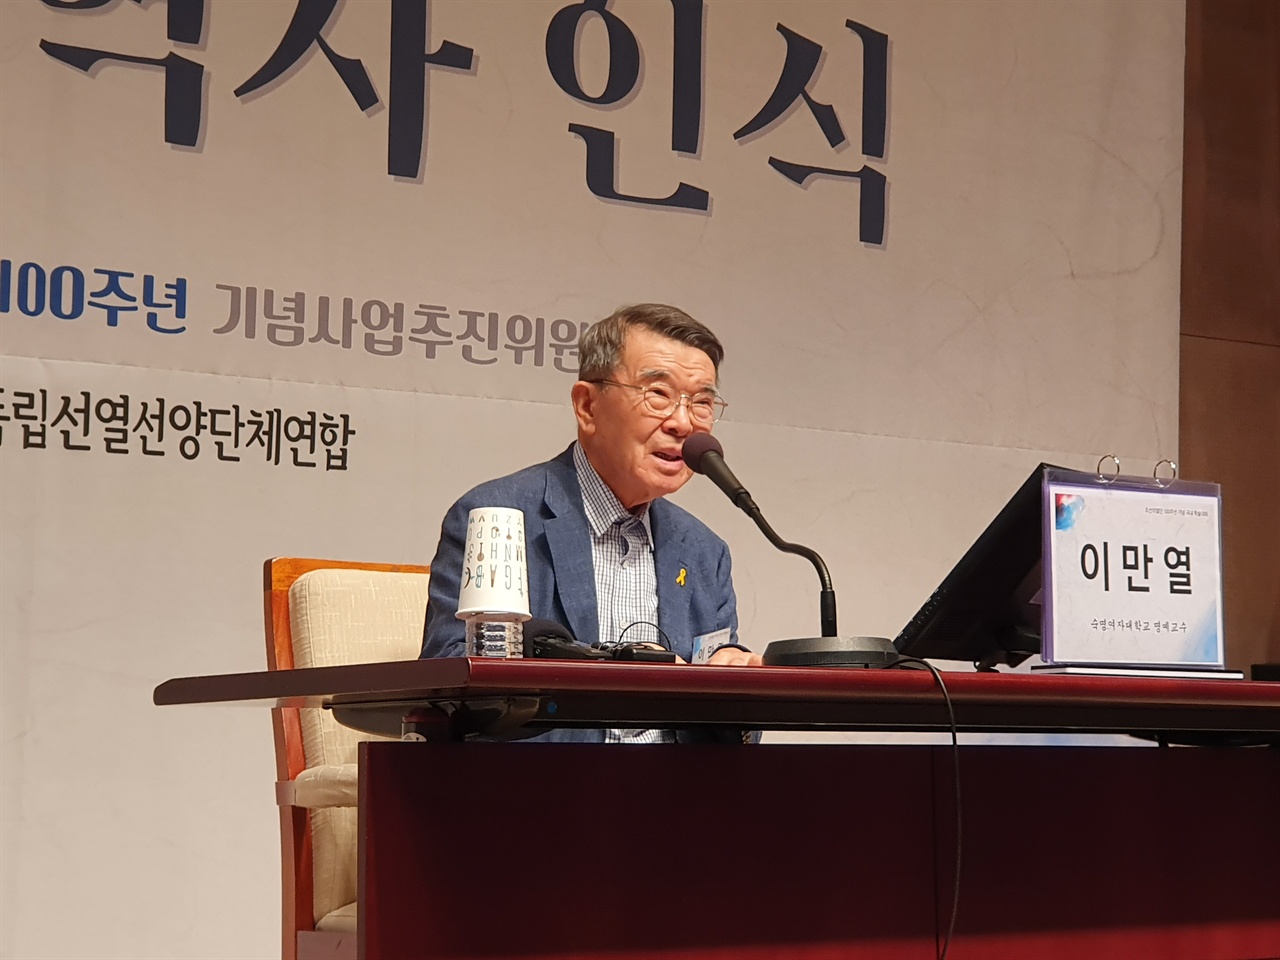 김원봉 서훈의 쟁점과 대안에 대해 발표하는 이만열 숙명여대 명예교수